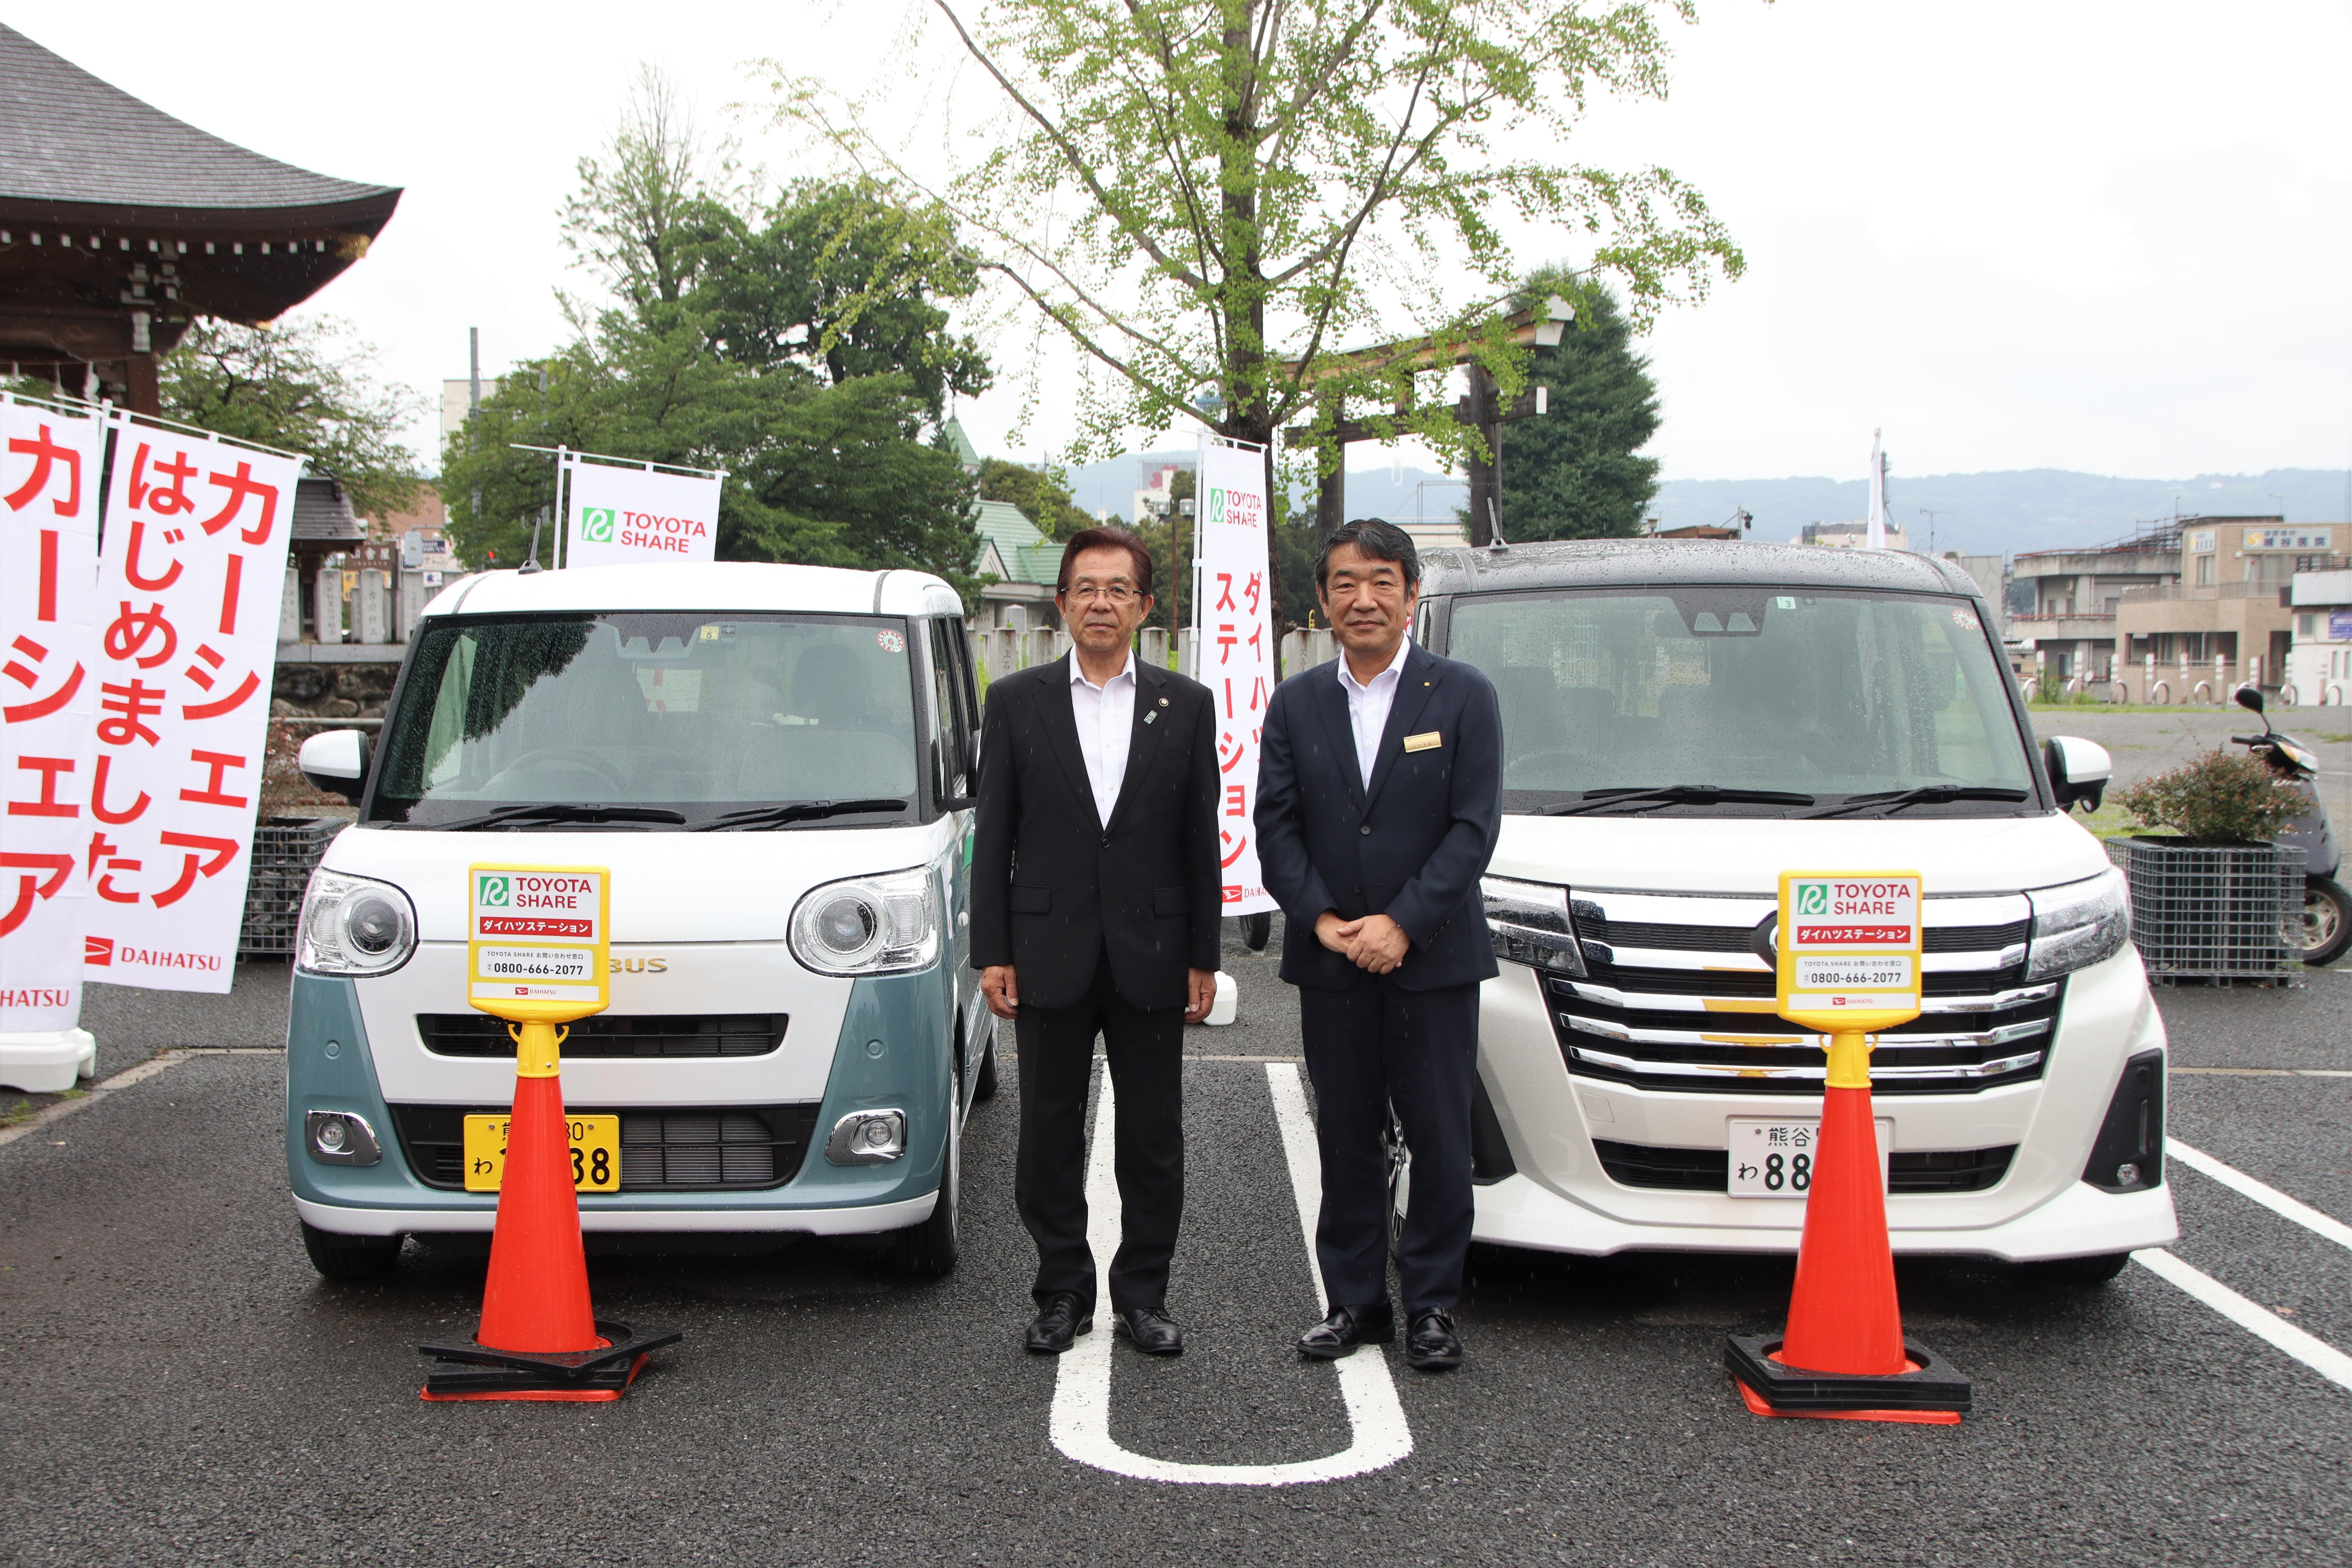 カーシェアリング車両の前に並んで立つ秩父市長と埼玉ダイハツ販売株式会社社長